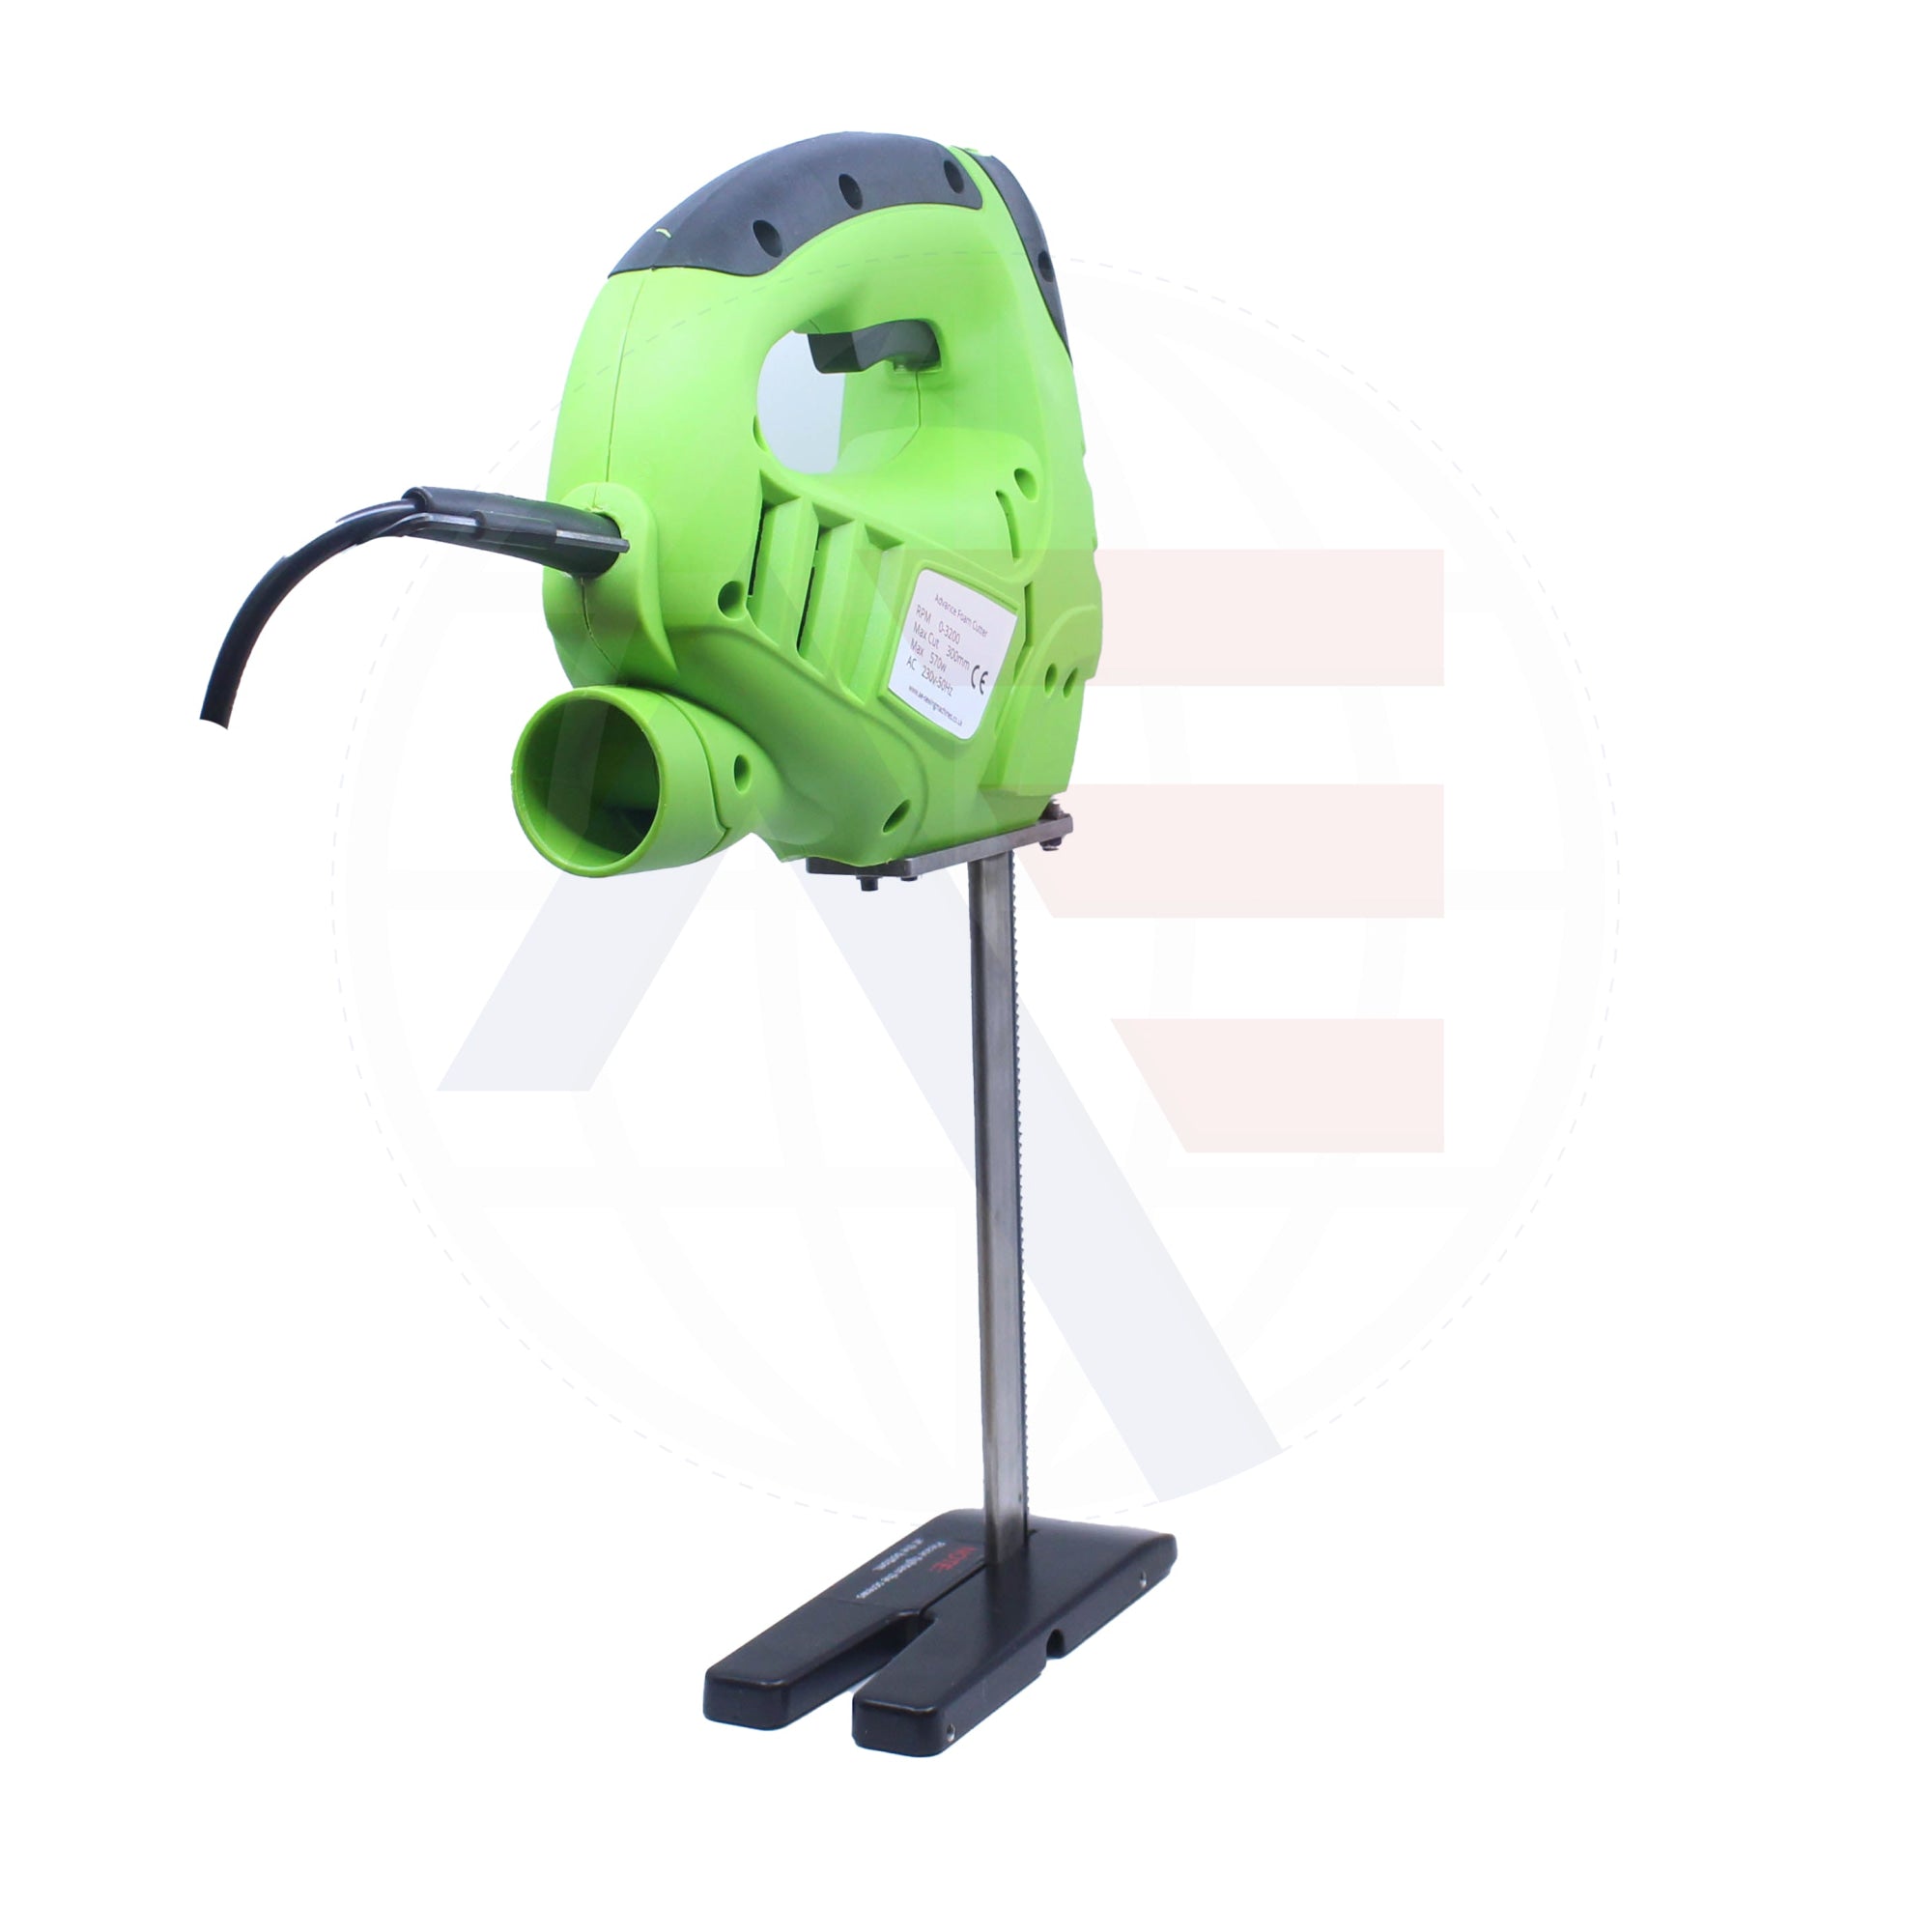 Advance Ae-03 Electric Foam & Rubber Cutting Saw Machines